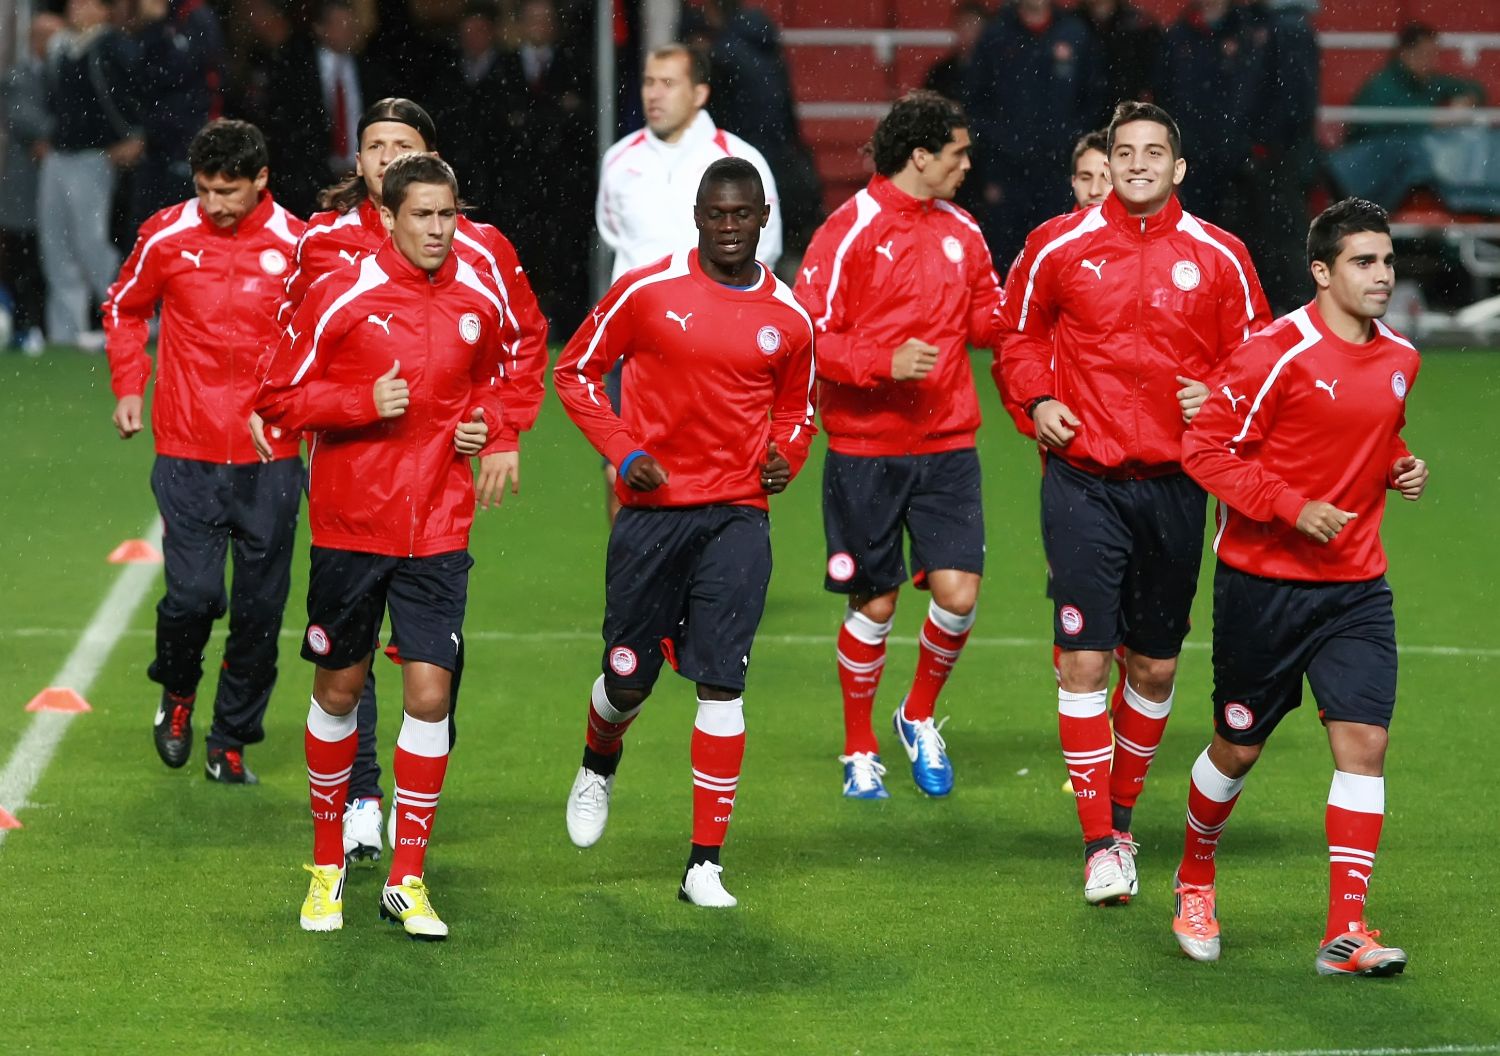 Training at Emirates stadium